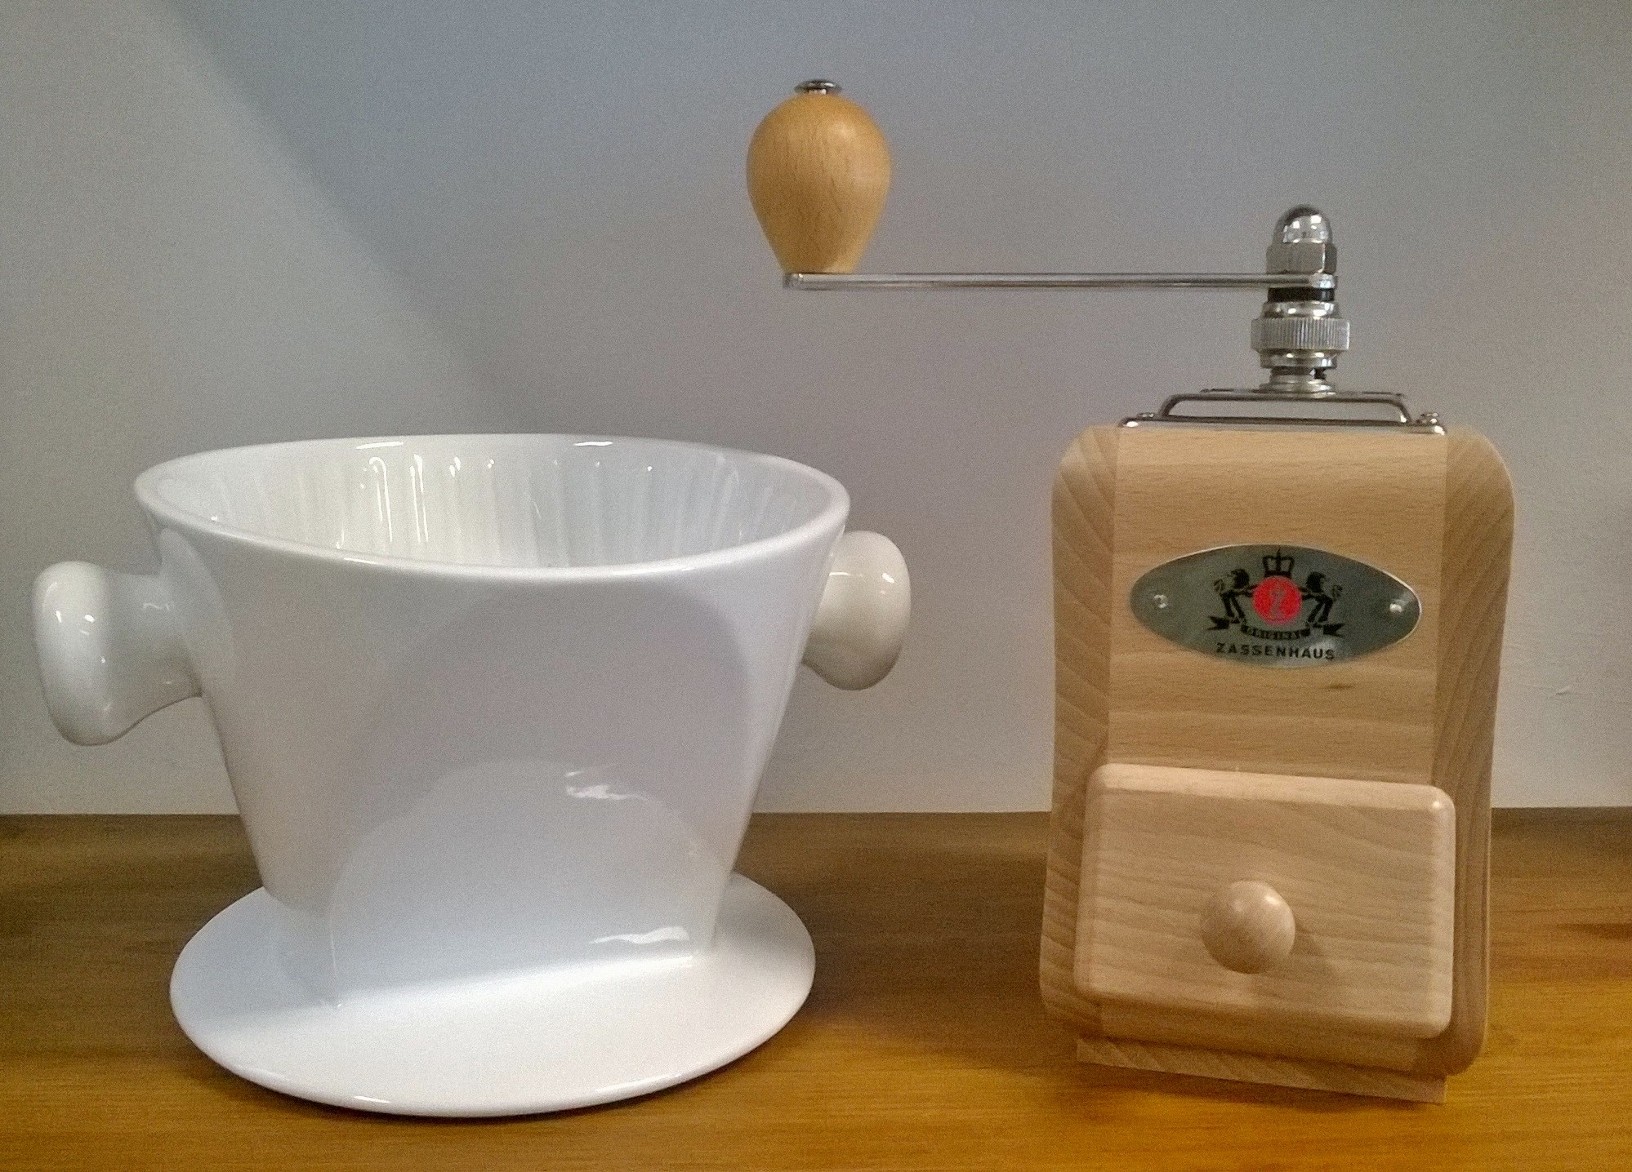 Porzellan-Kaffeefilter und Zassenhaus Kniemühle aus Buchenholz